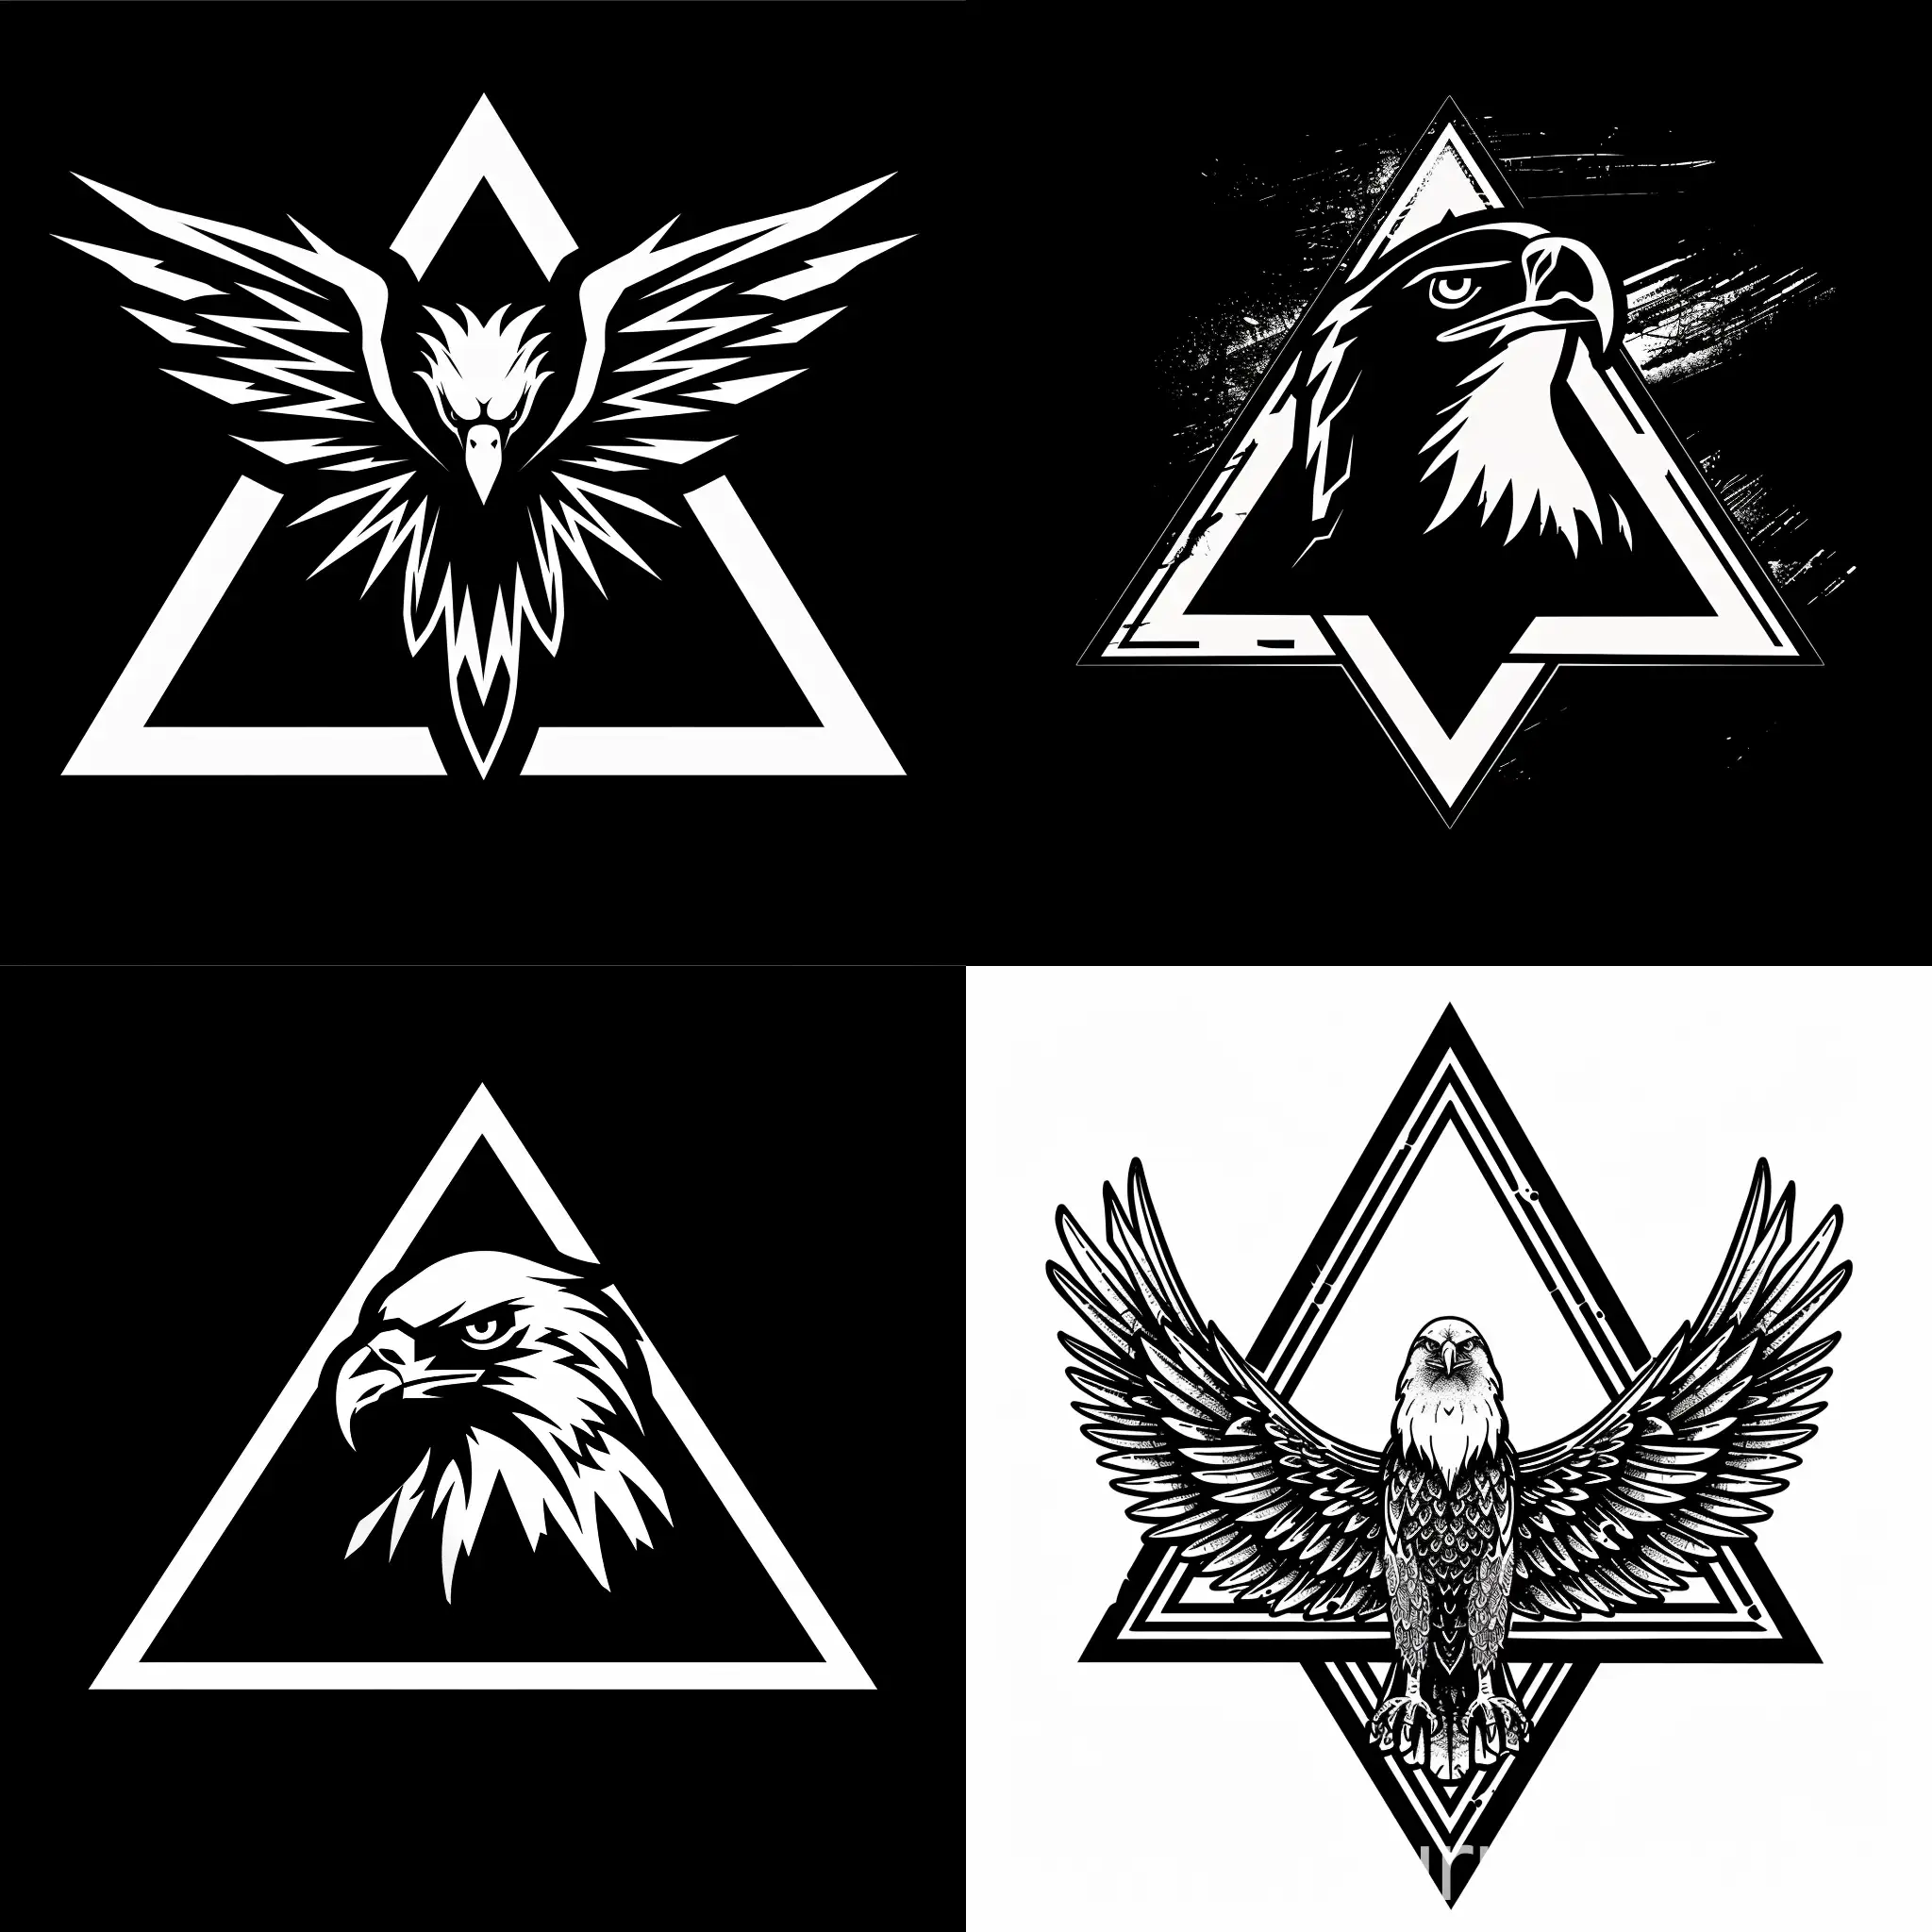 Нарисуй залитый сполошной символ 2D орла который нахидится в треугольнике в стиле SCP